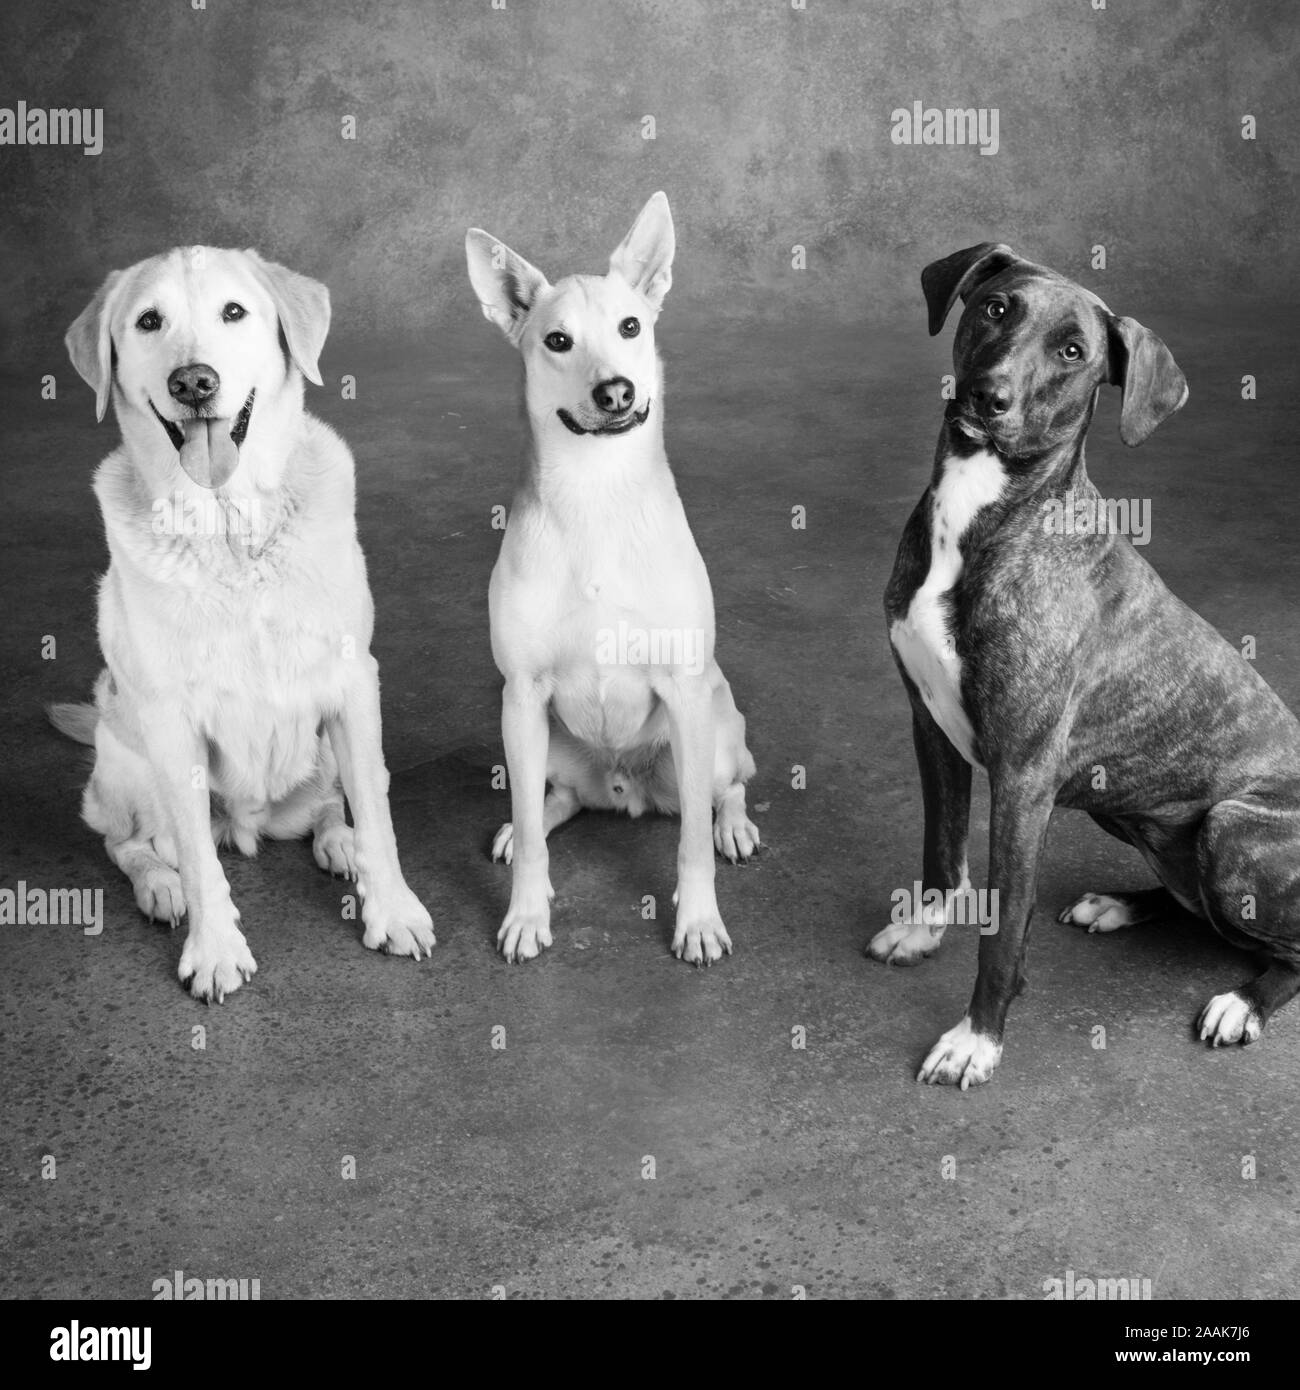 Studio portrait of three dogs Stock Photo